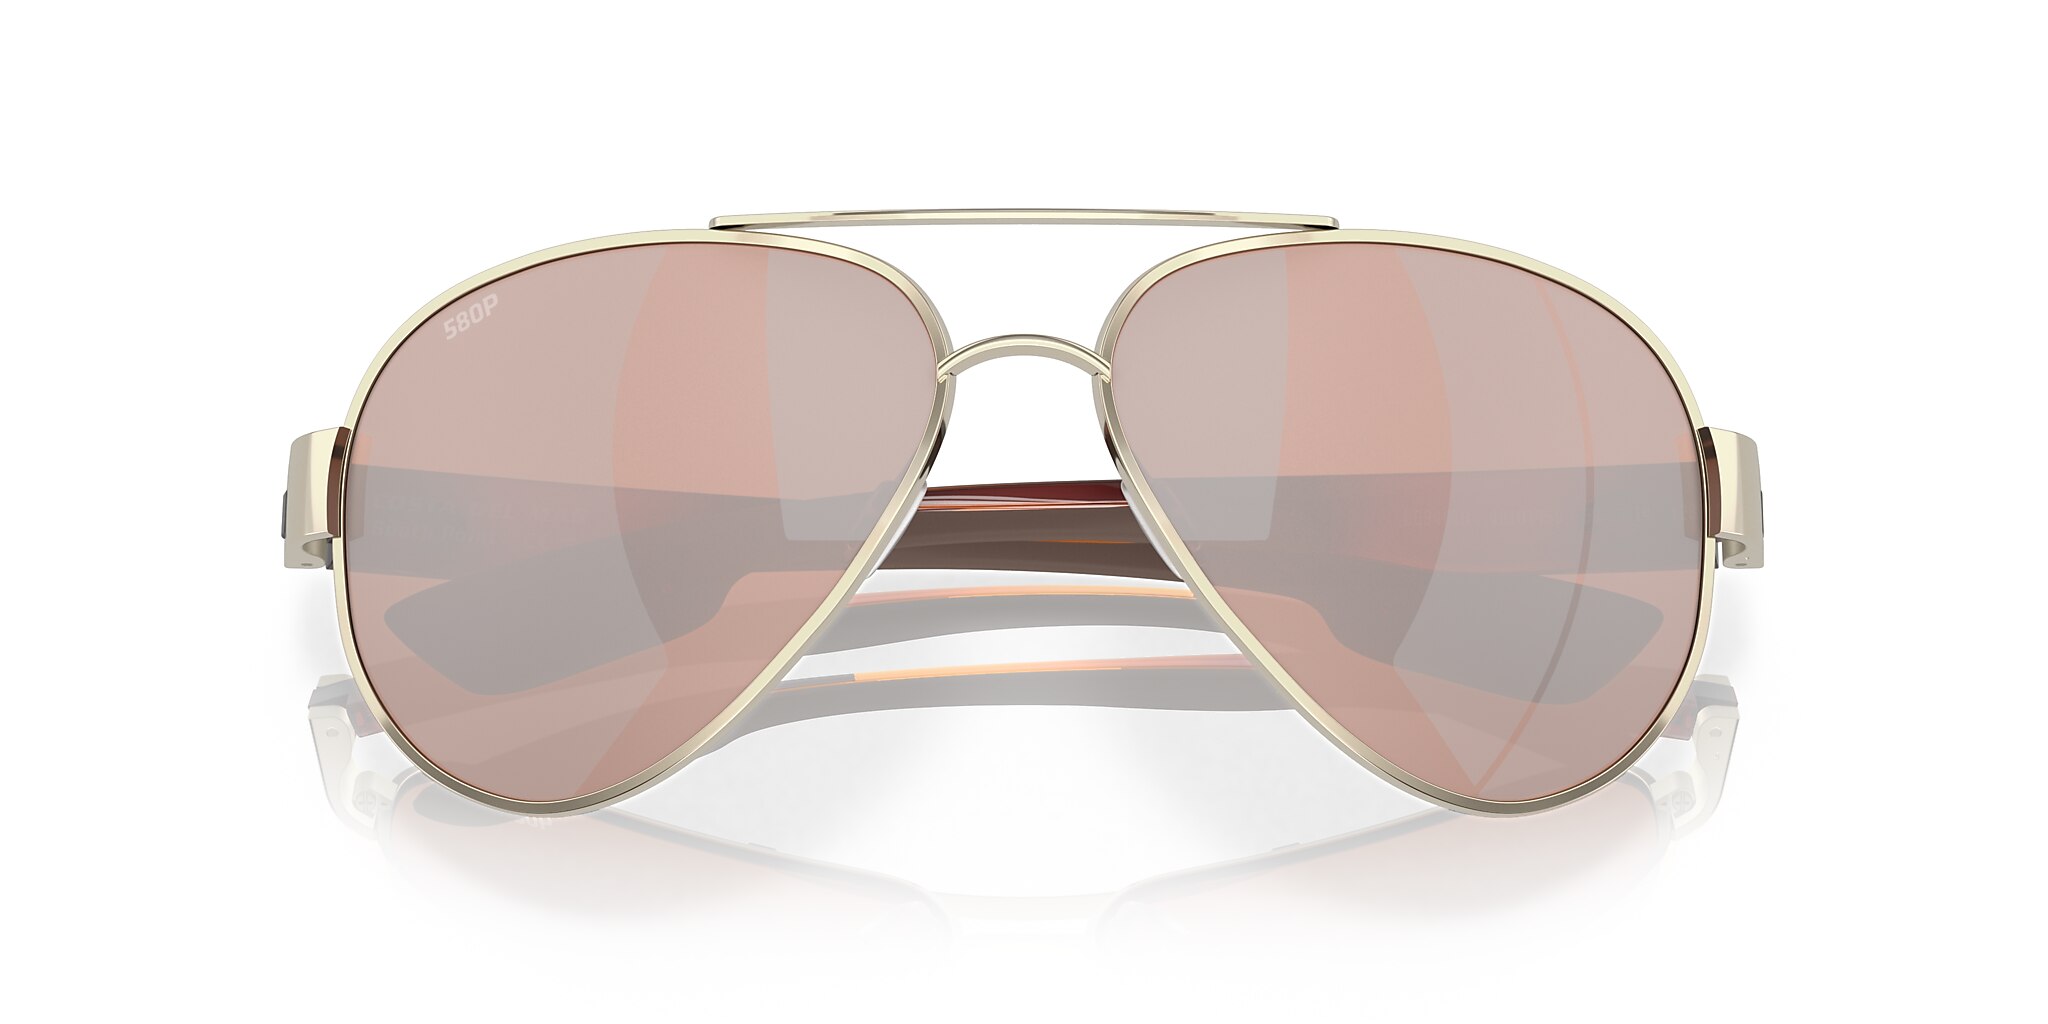 South Point Polarized Sunglasses in Copper Silver Mirror | Costa